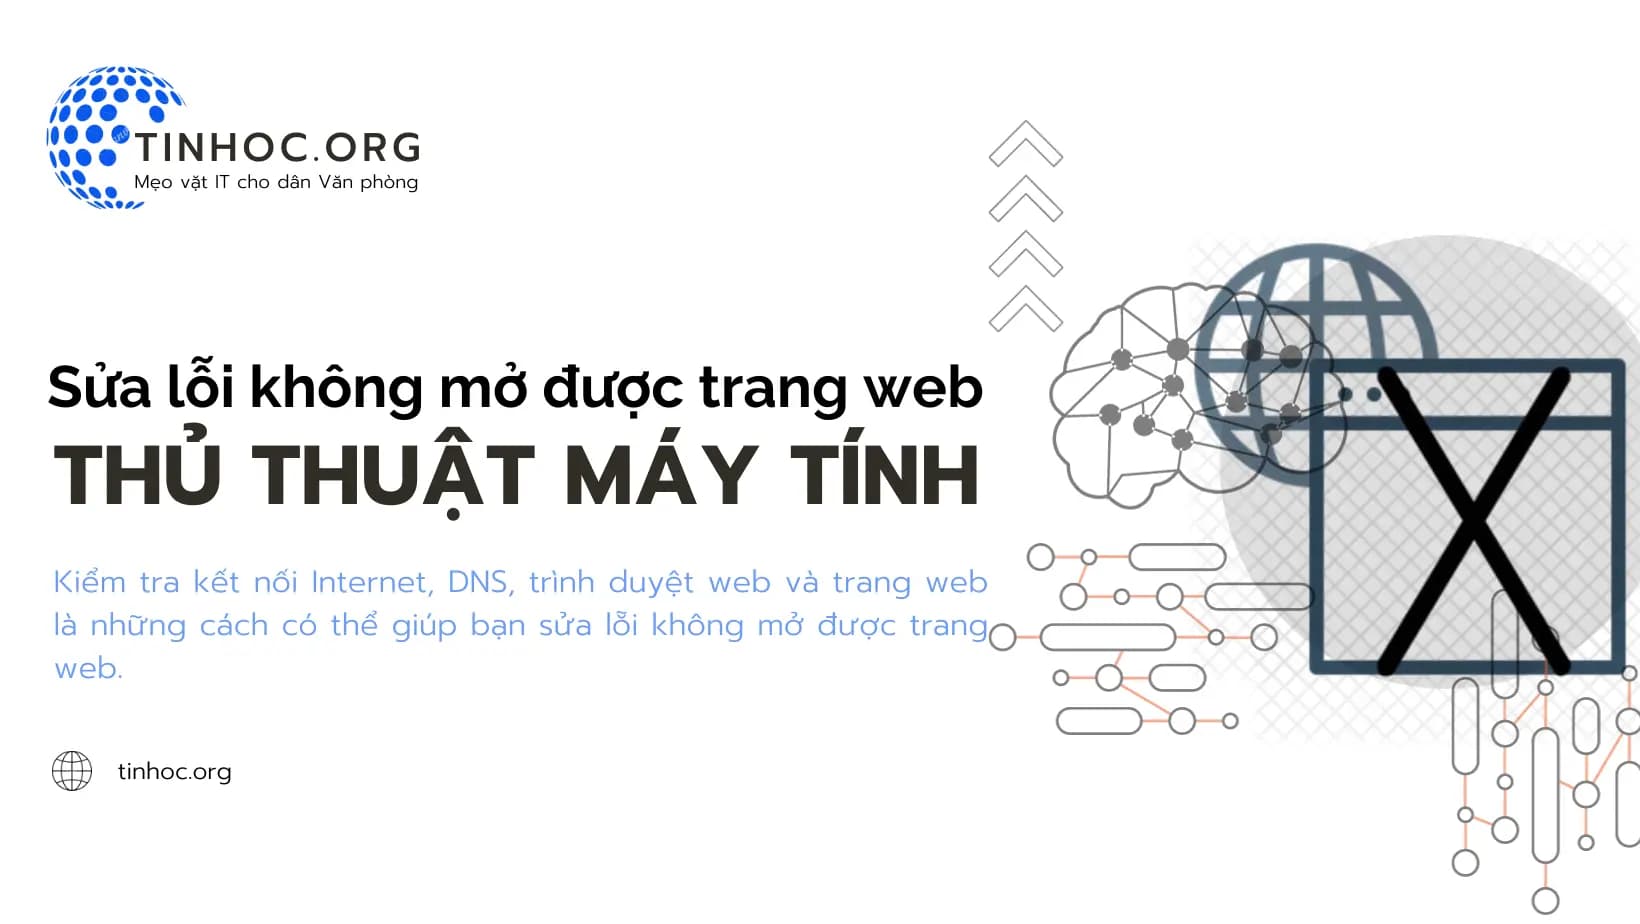 Kiểm tra kết nối Internet, DNS, trình duyệt web và trang web là những cách có thể giúp bạn sửa lỗi không mở được trang web.